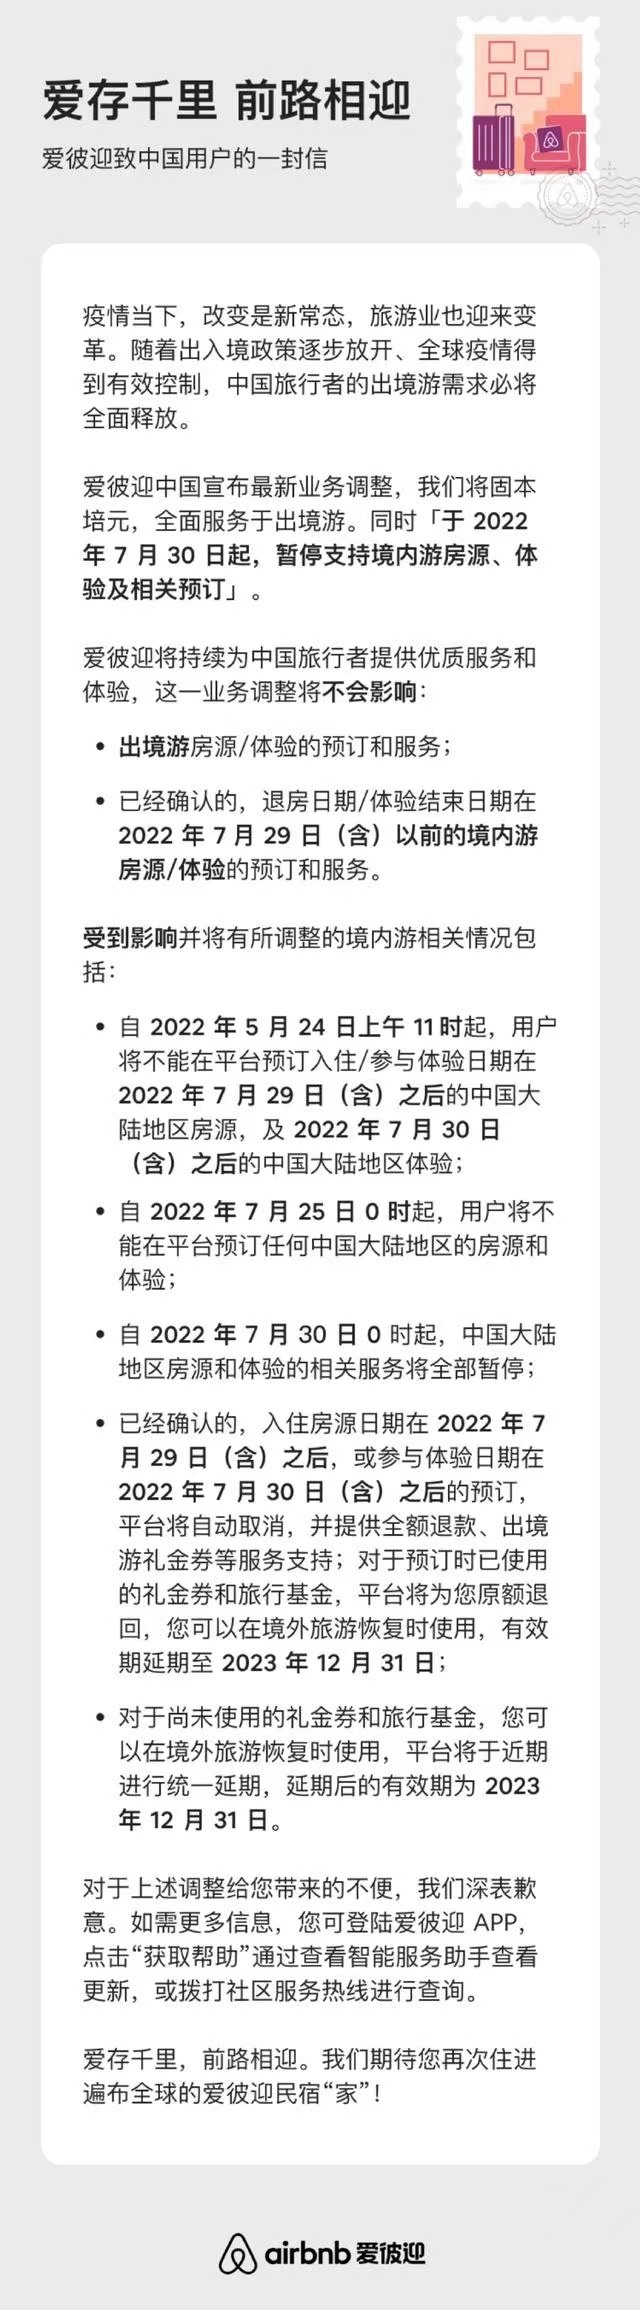 爱彼迎中国宣布最新业务调整：将暂停支持境内游房源、体验及相关预订，全面服务于出境游